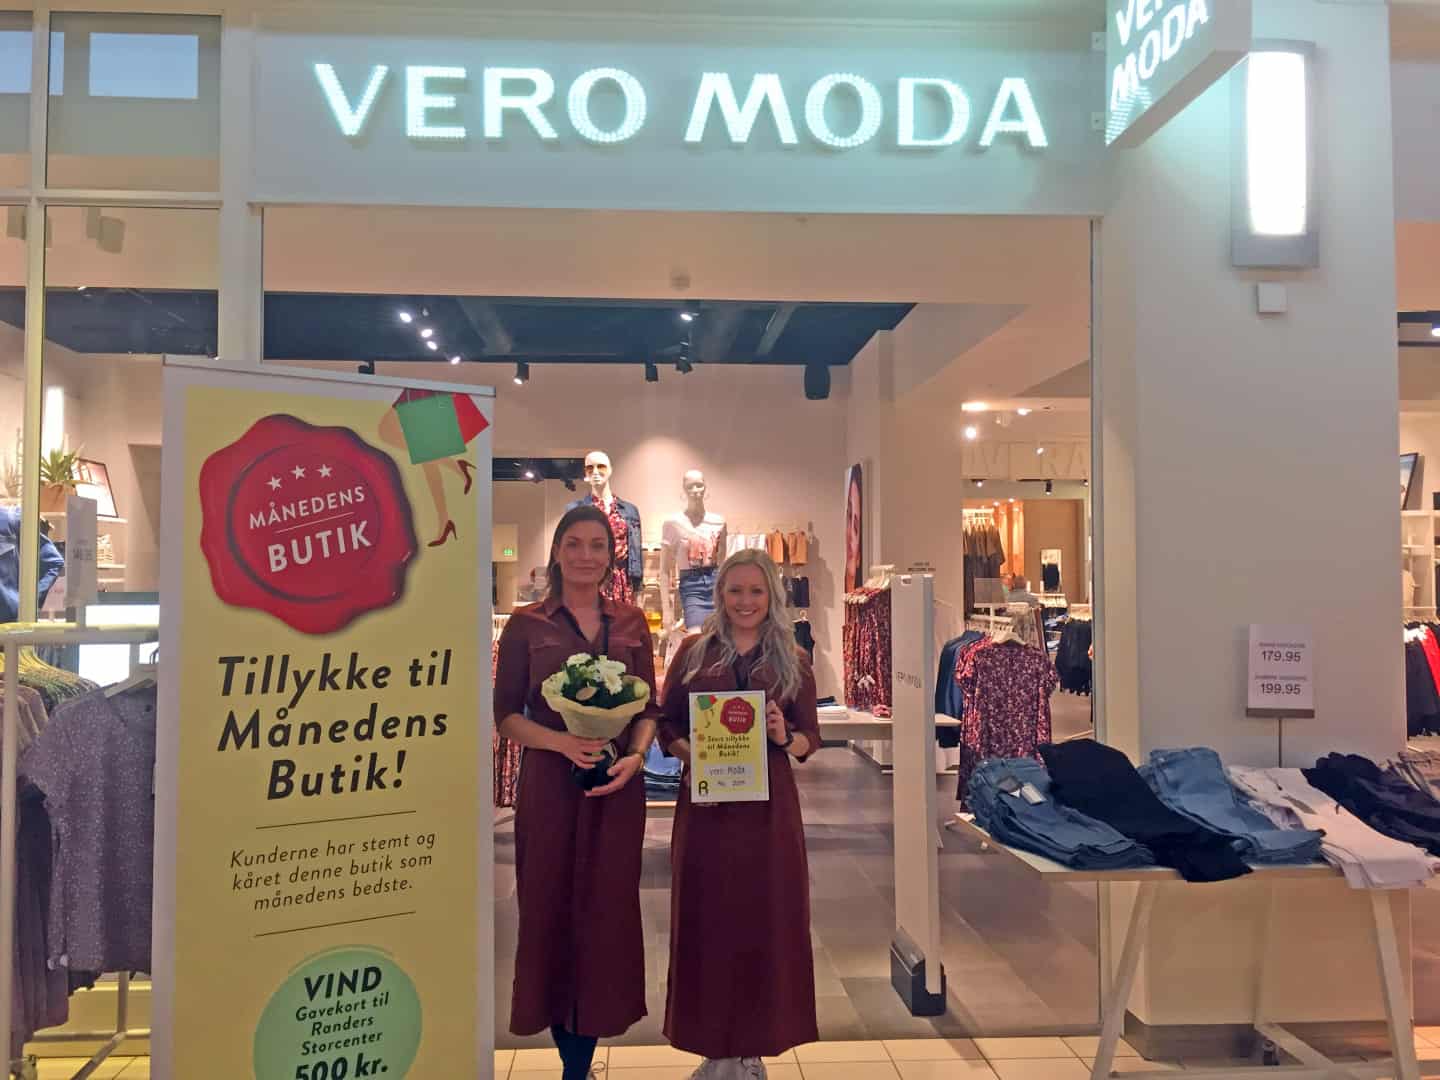 Vero blev butik i Storcentret ugeavisen.dk